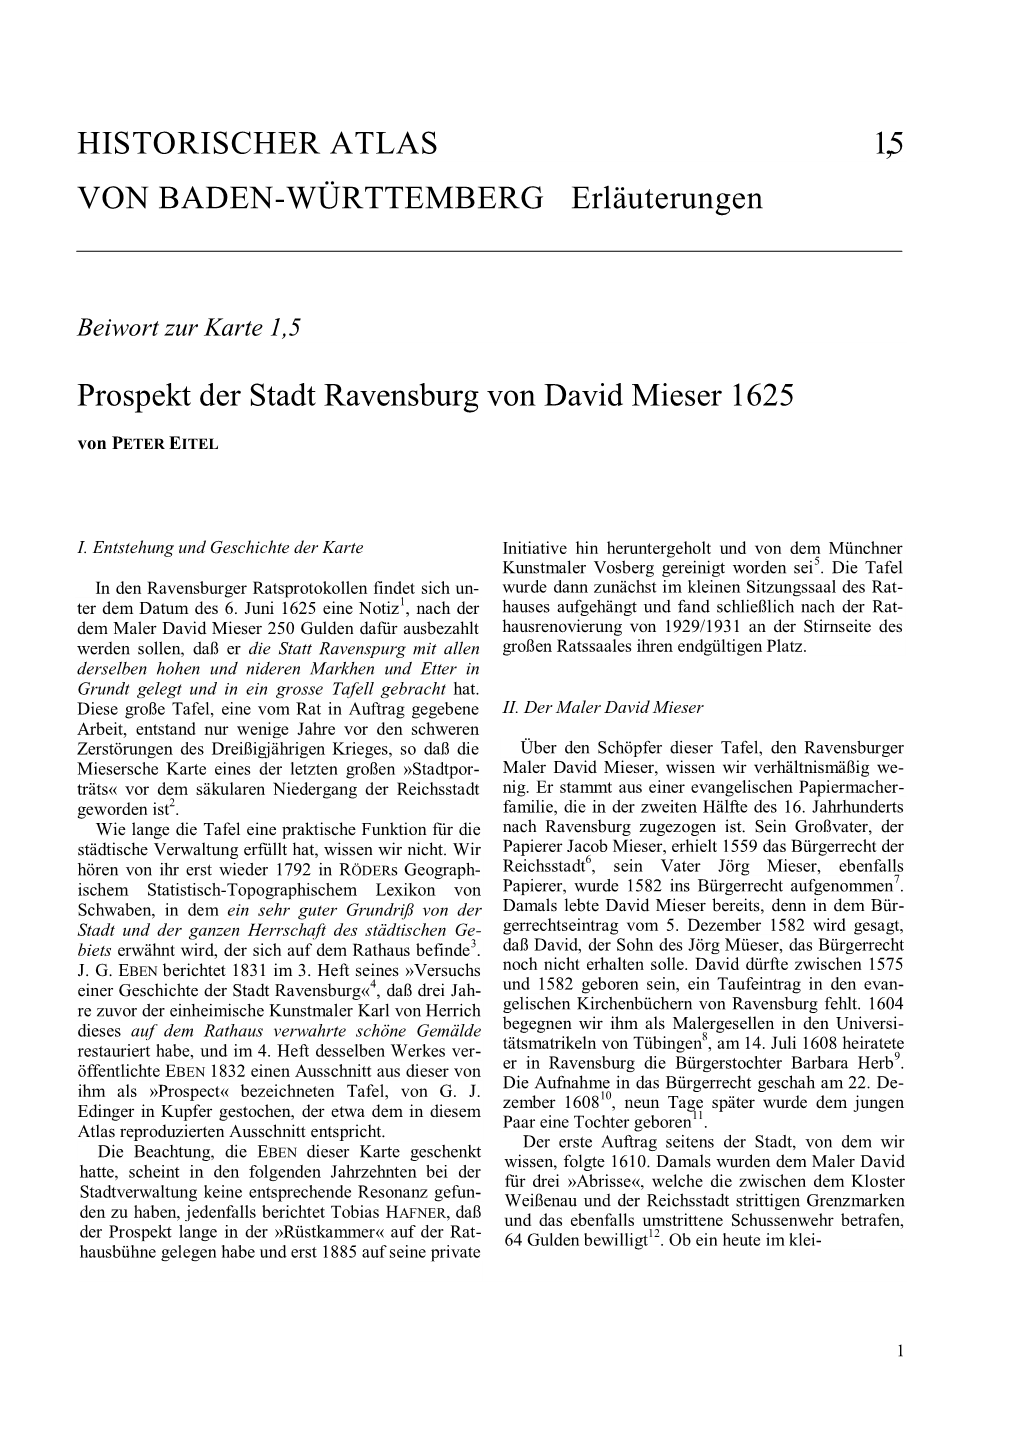 Prospekt Der Stadt Ravensburg Von David Mieser 1625 Von PETER EITEL